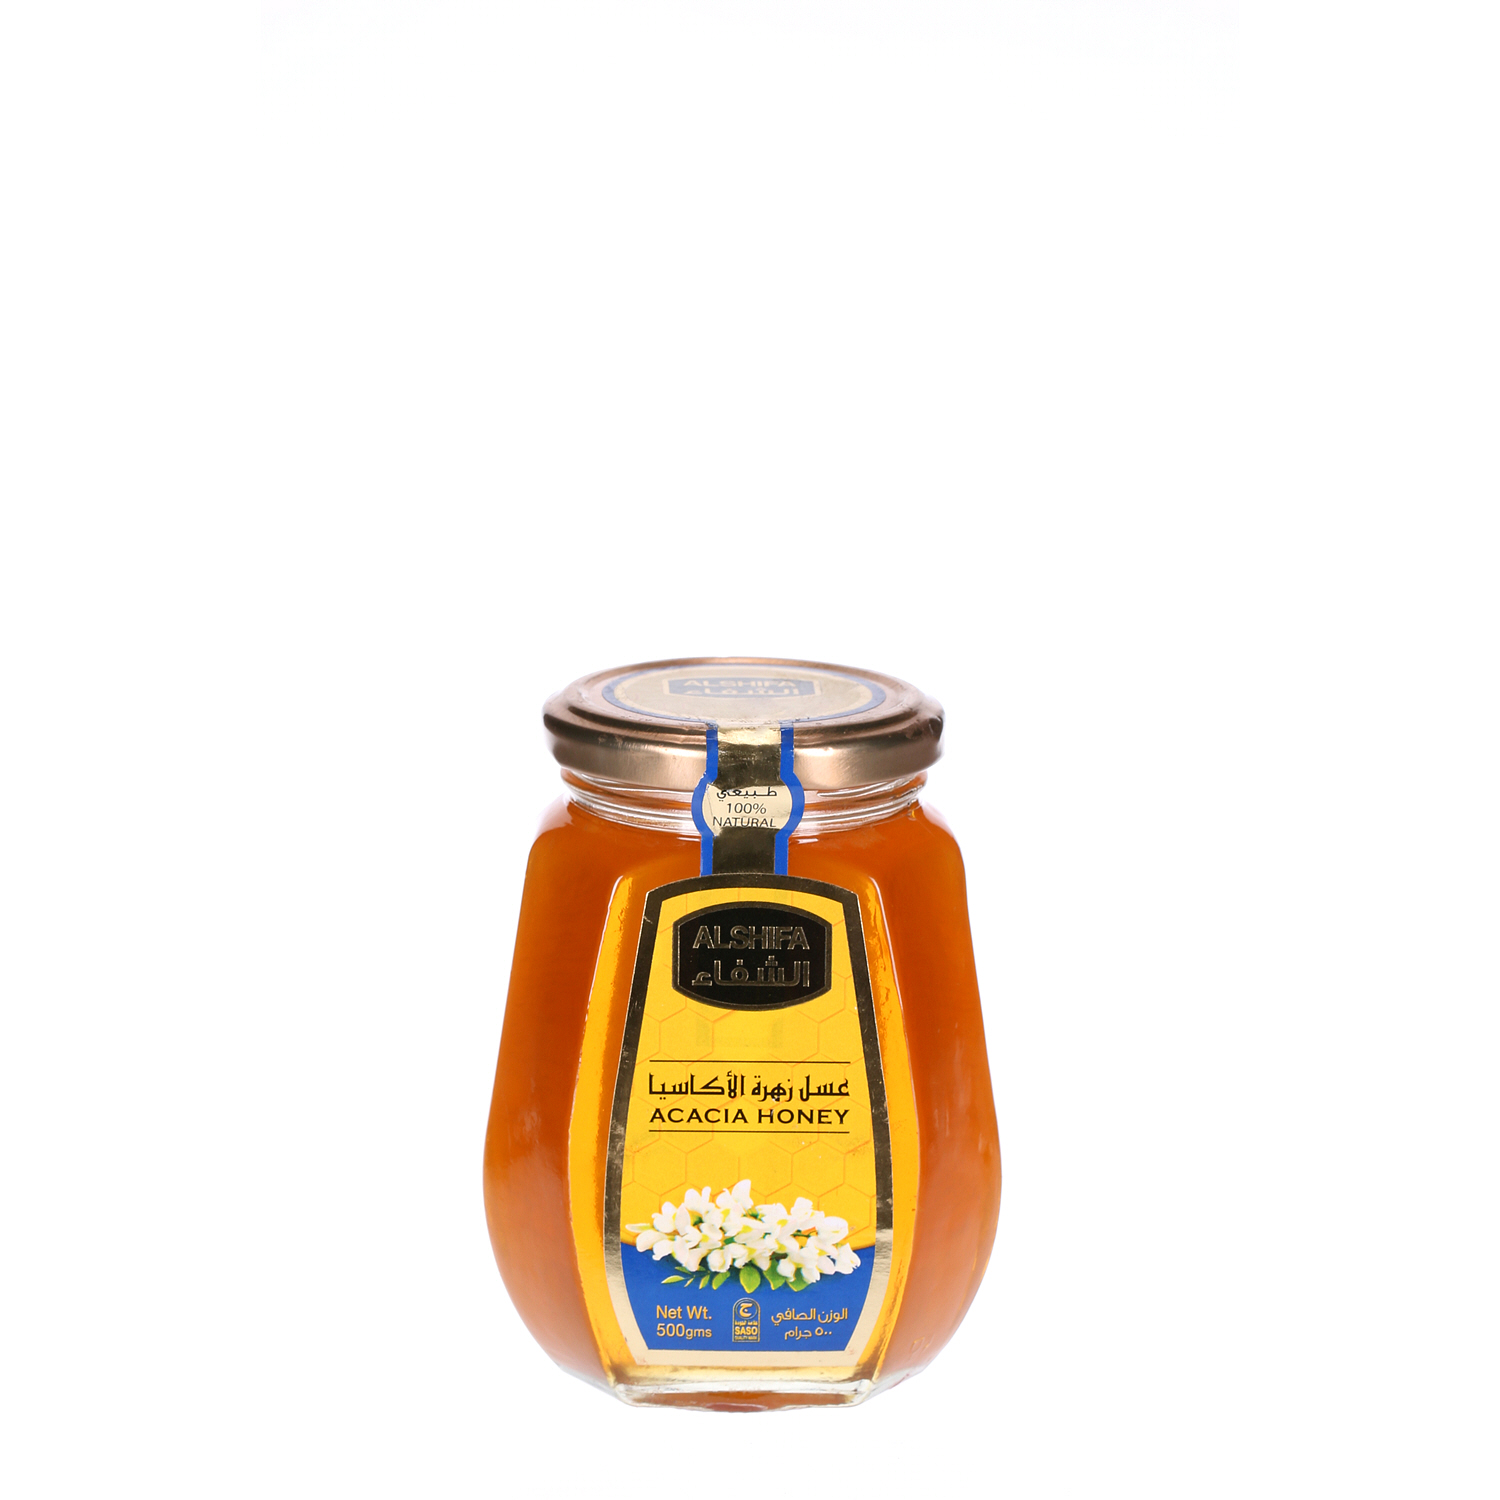 Al Shifa Honey Acacia 500g